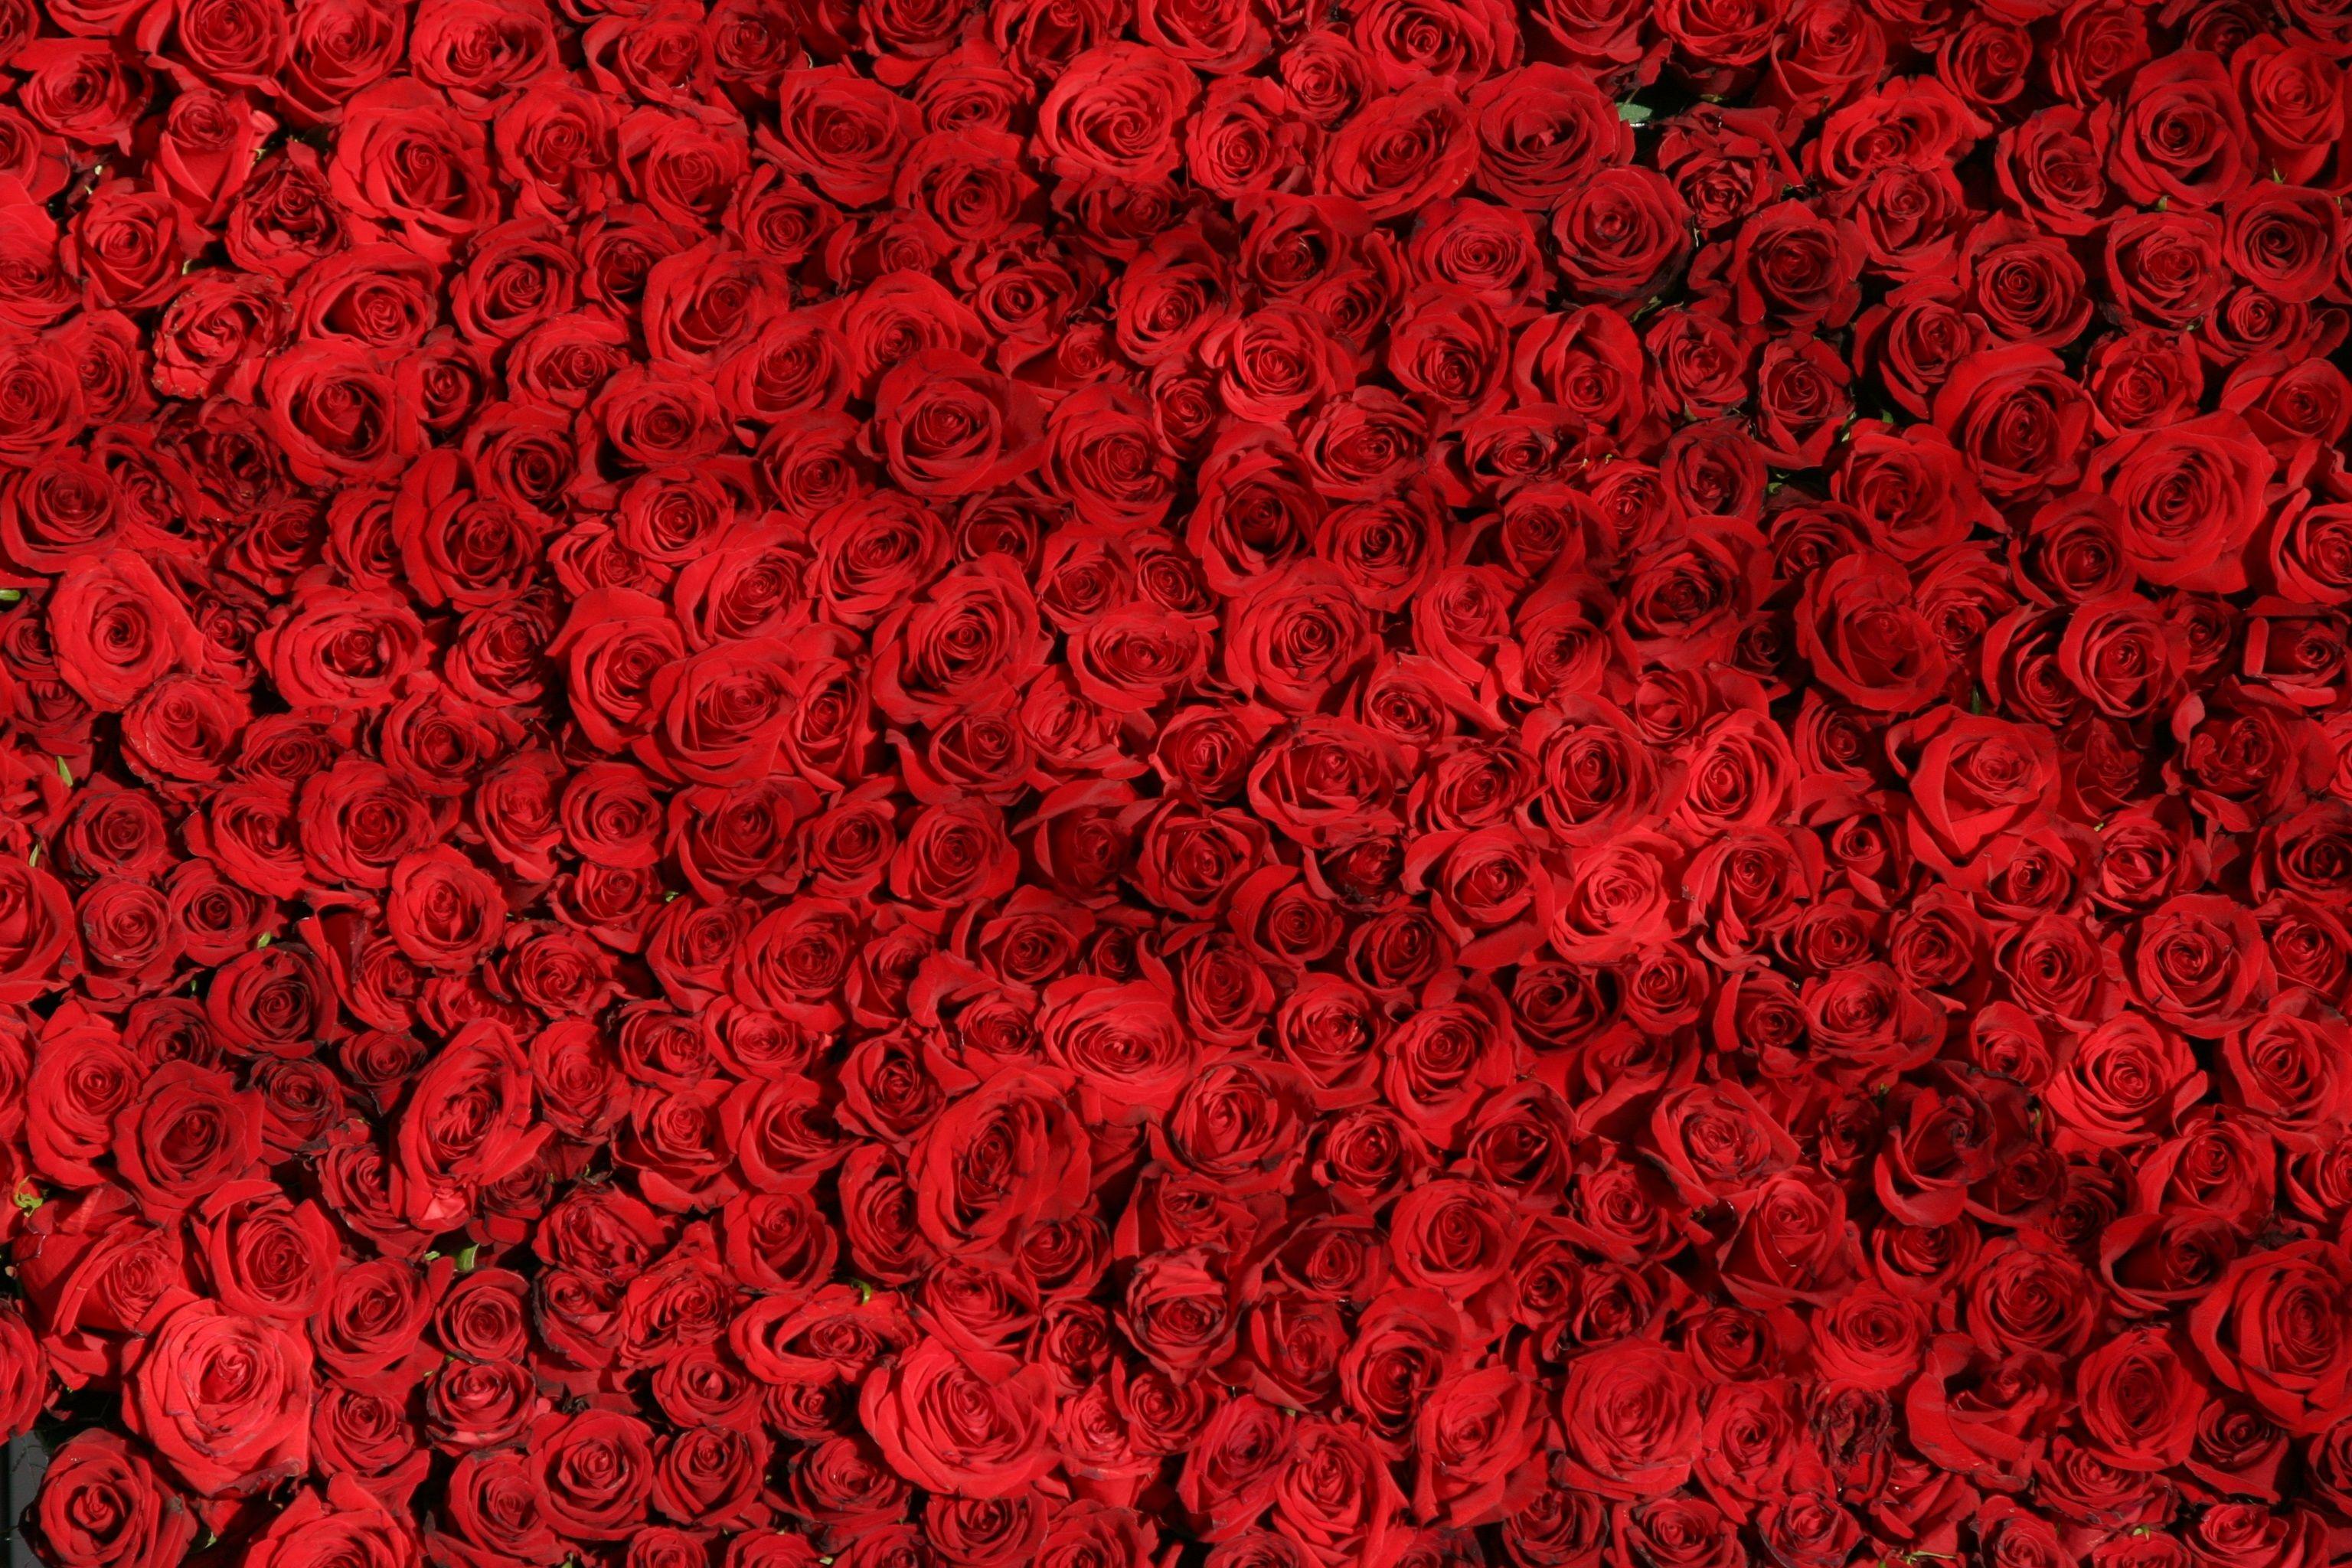 Red Rose Flowers Wallpaper for Desktop. Free 4K Wallpaper